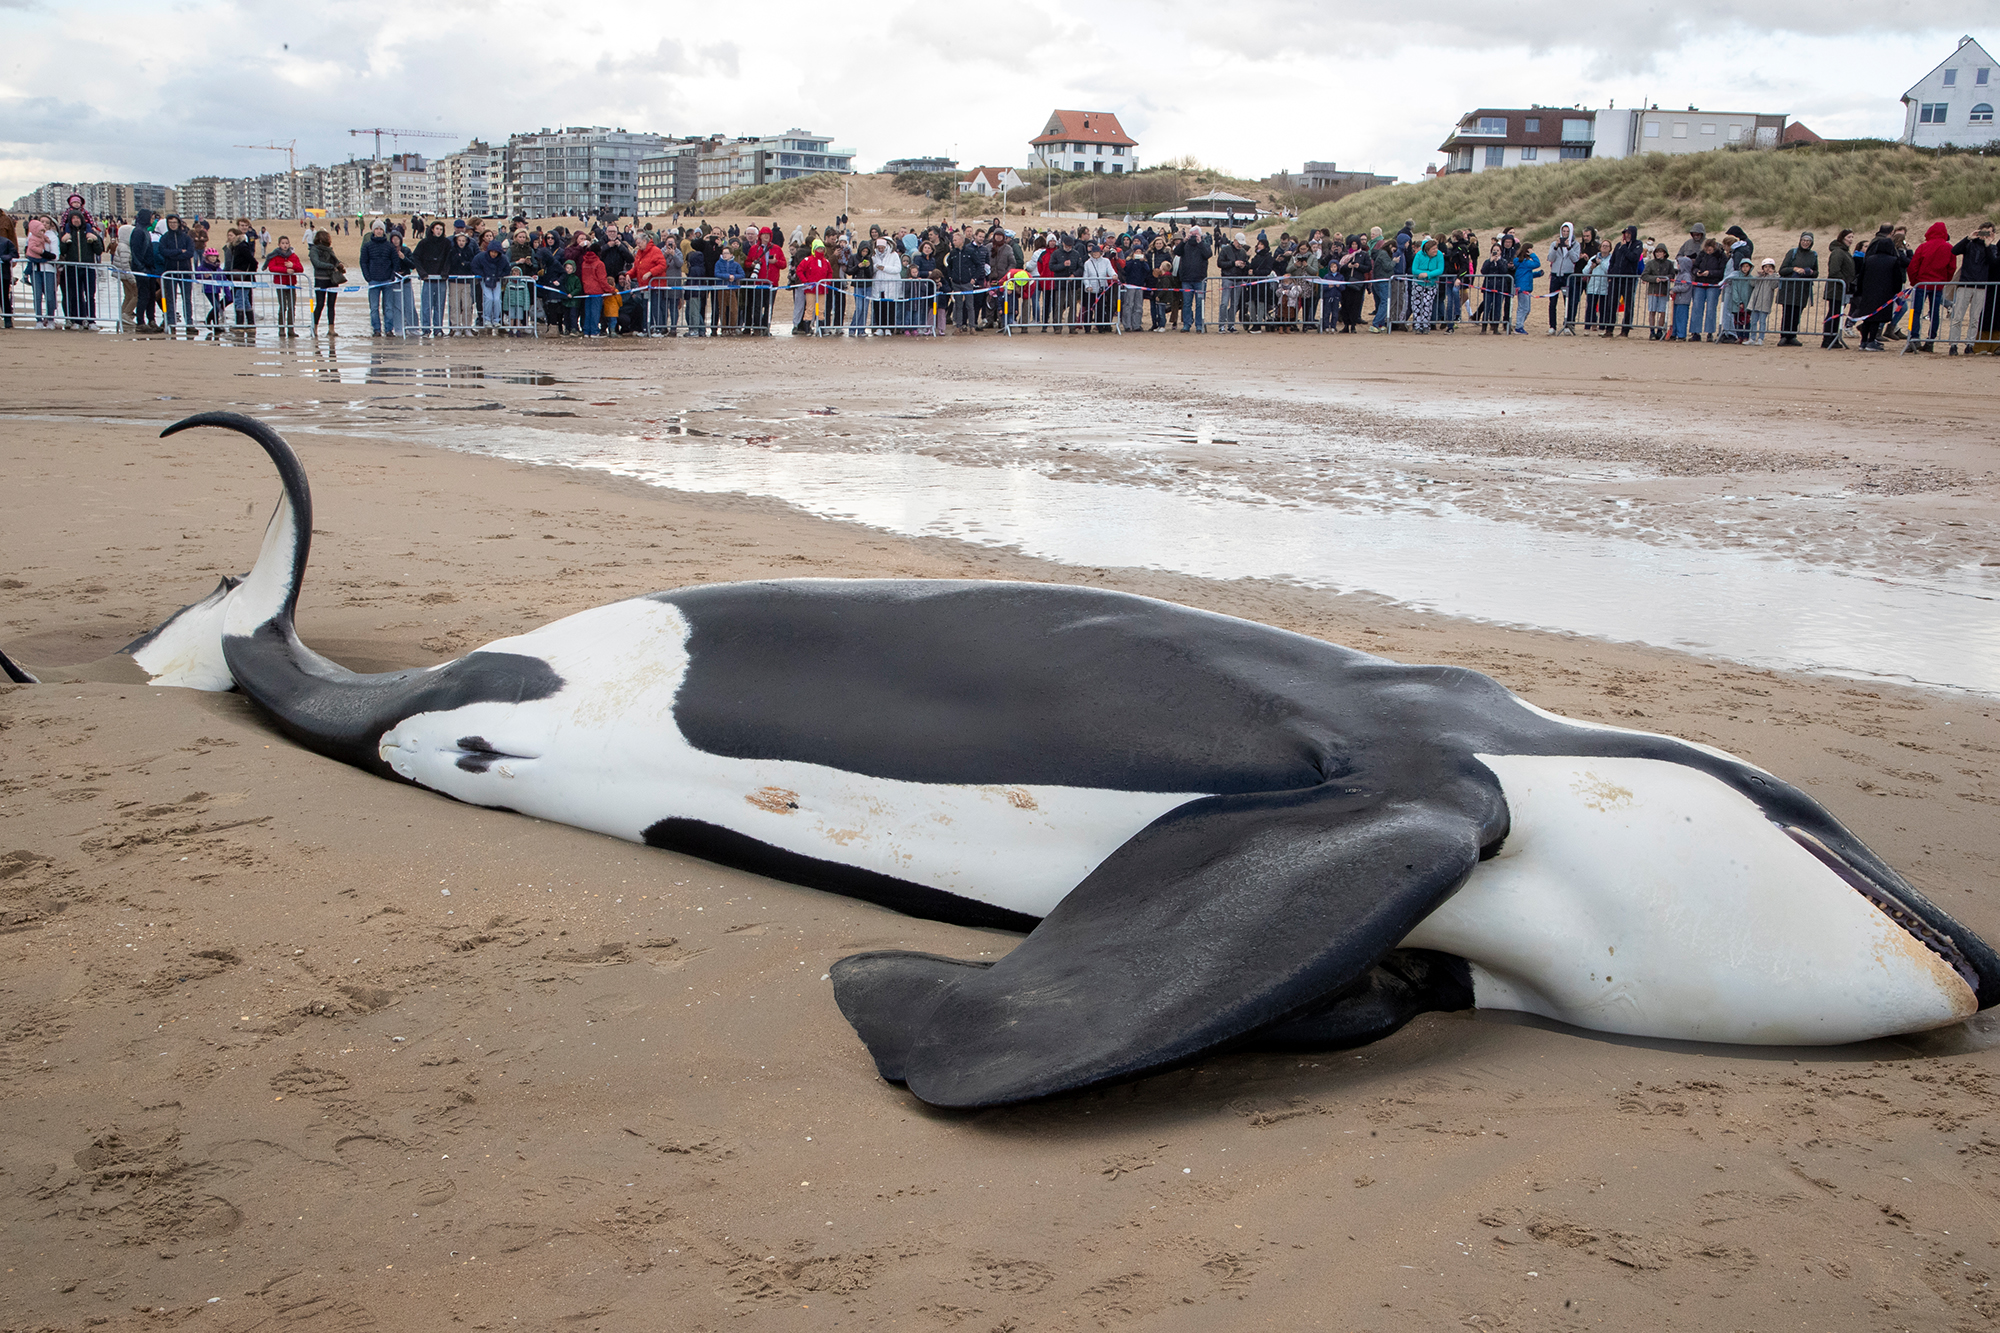 Am 29. Oktober wurde der Orca in De Panne angespült (Bild: Nicolas Maeterlinck/Belga)